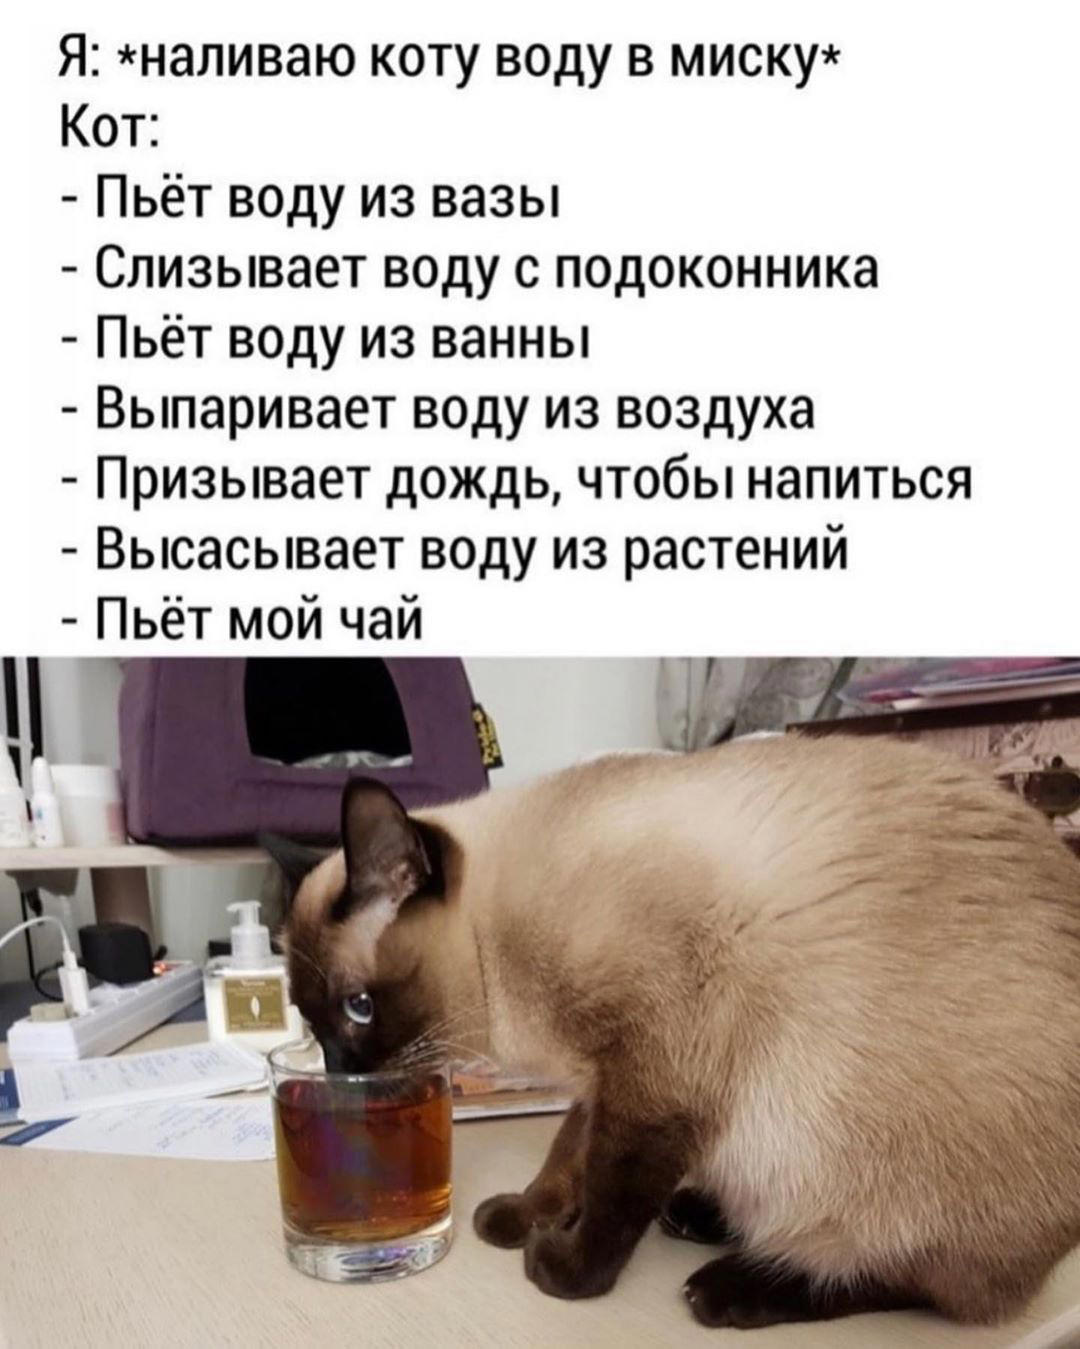 Как стать попитом. Пятница котики. Налей коту воды. Котик пьет из миски. Смешная картинка для поднятия настроения.